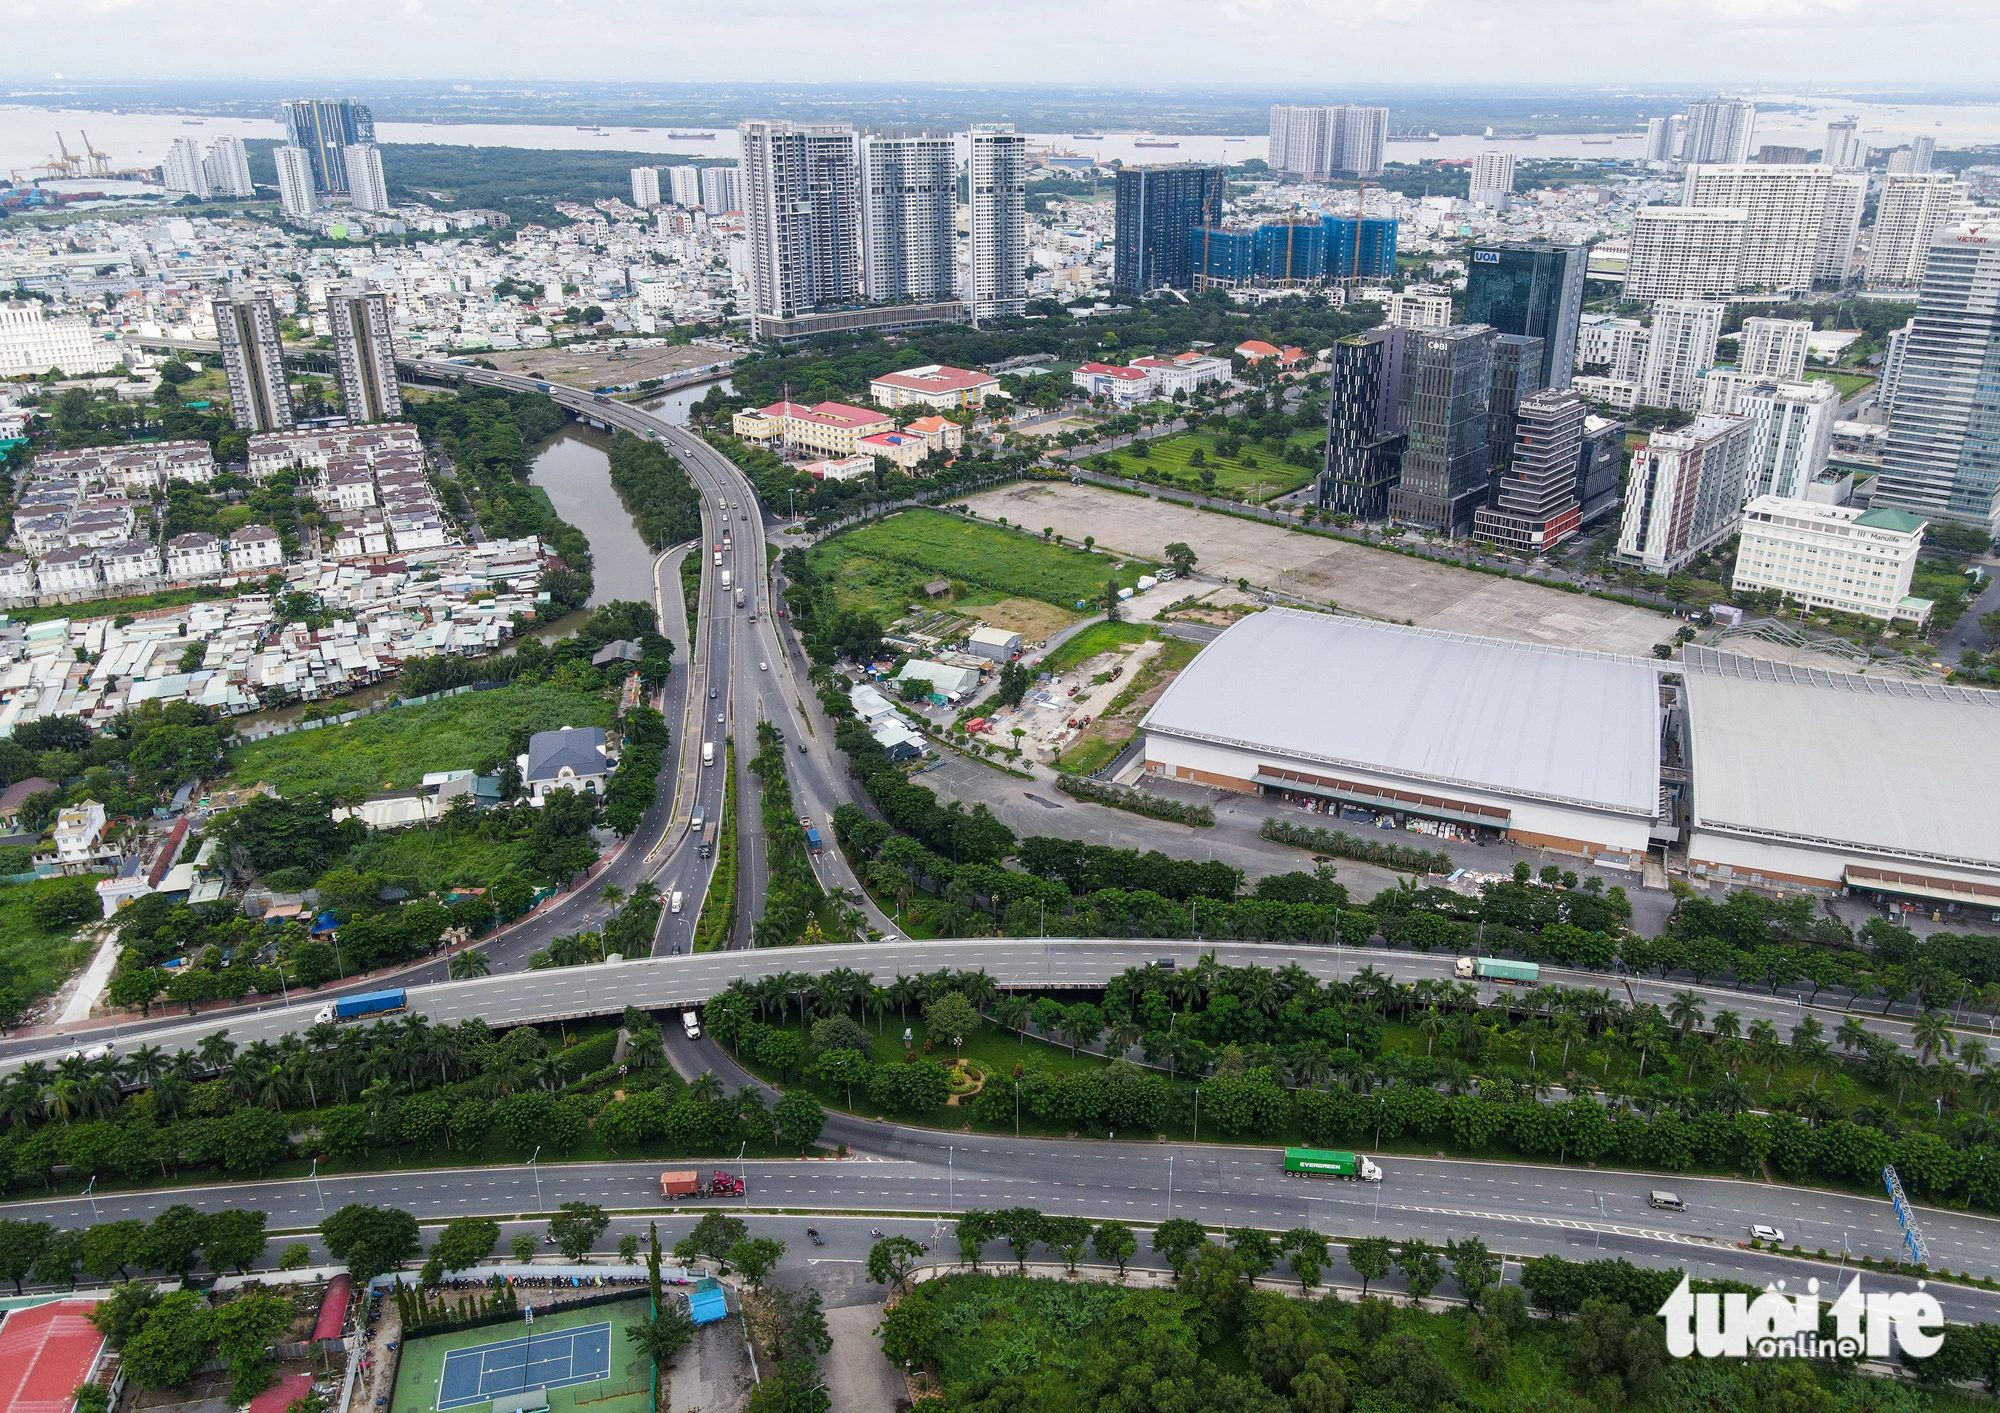 Dự án đường dẫn có các thành phần đường vành đai phía đông từ cầu Phú Mỹ đến cầu Rạch Chiếc, đường trên cao nối từ nút giao thông khu A Nam Sài Gòn đến cầu Phú Mỹ, nút giao thông khu A Nam Sài Gòn.